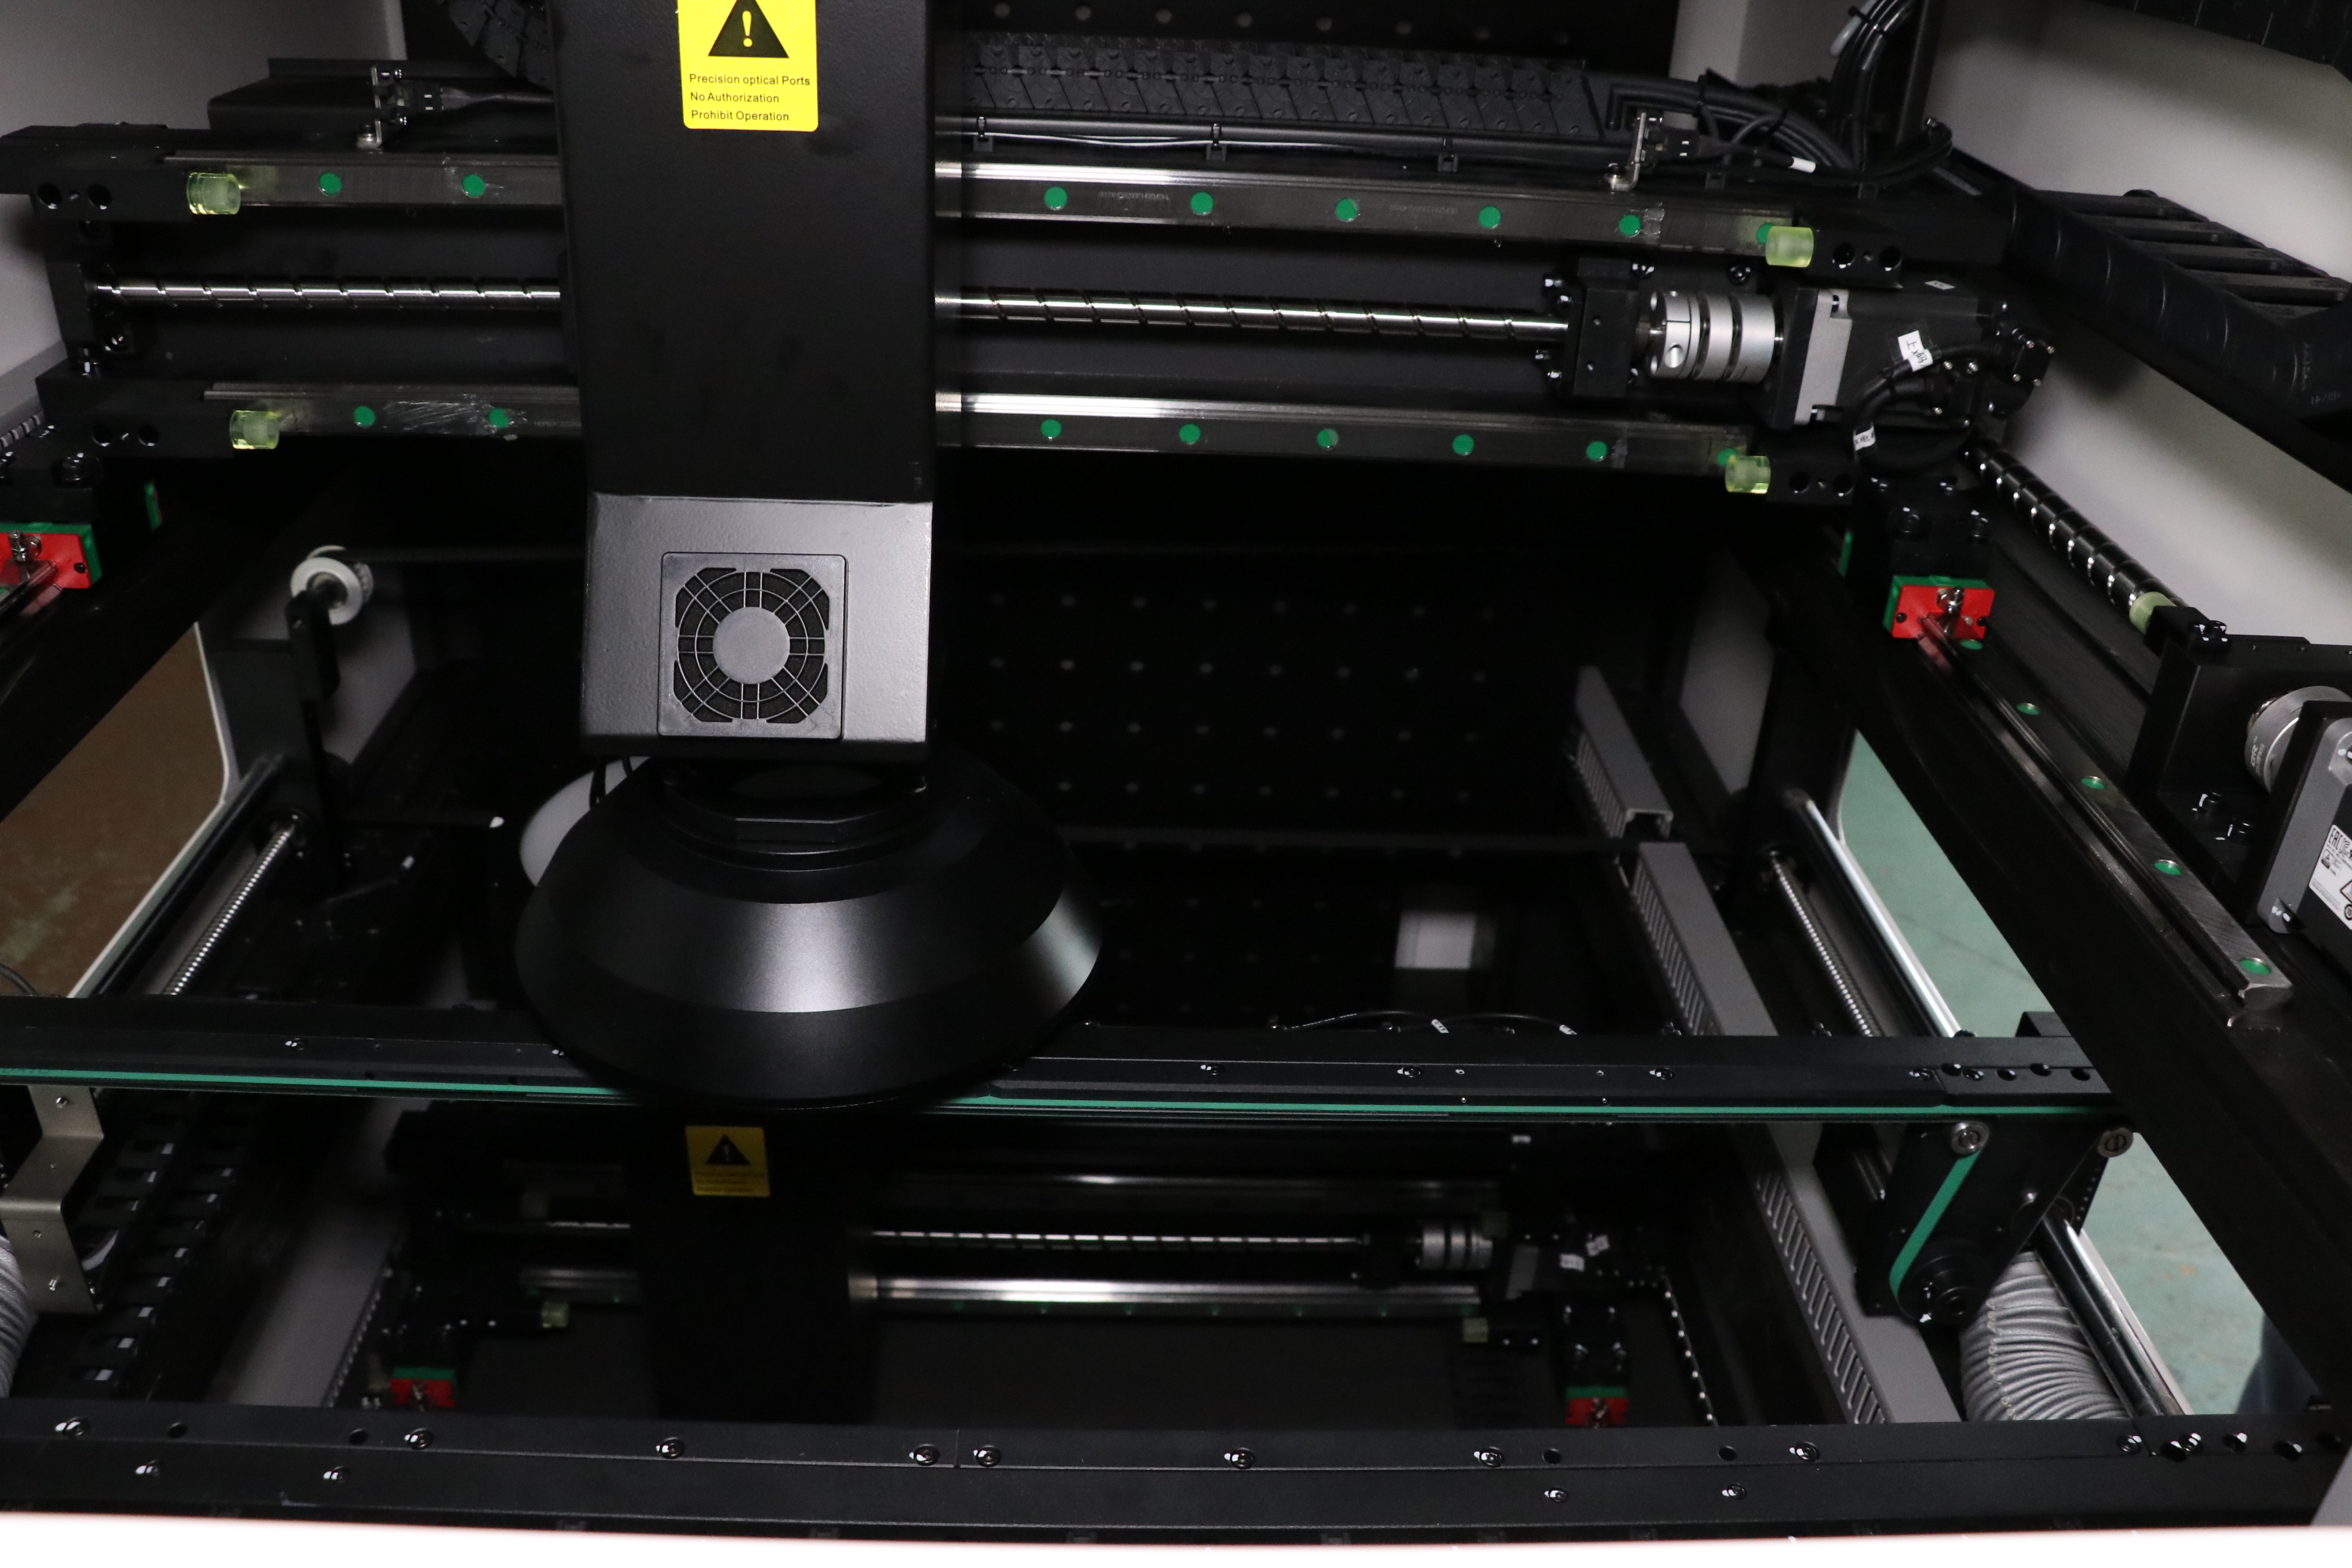 ICT 3D Aoi Optische Inspektionsmaschine für Leiterplatten